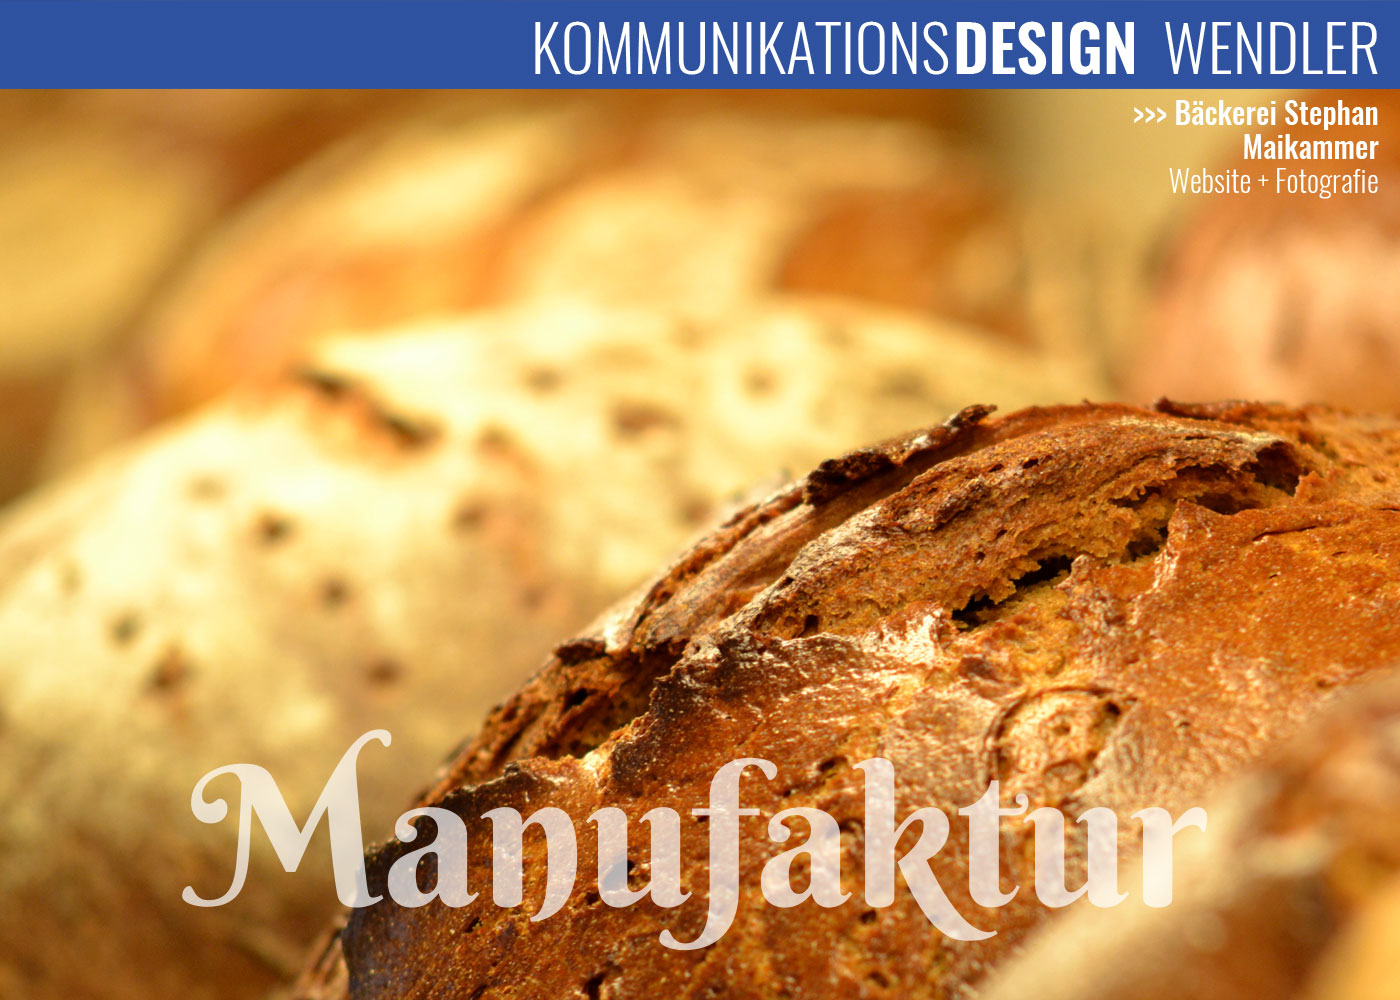 Bäckerei Stephan in Maikammer, Website und Fotografie